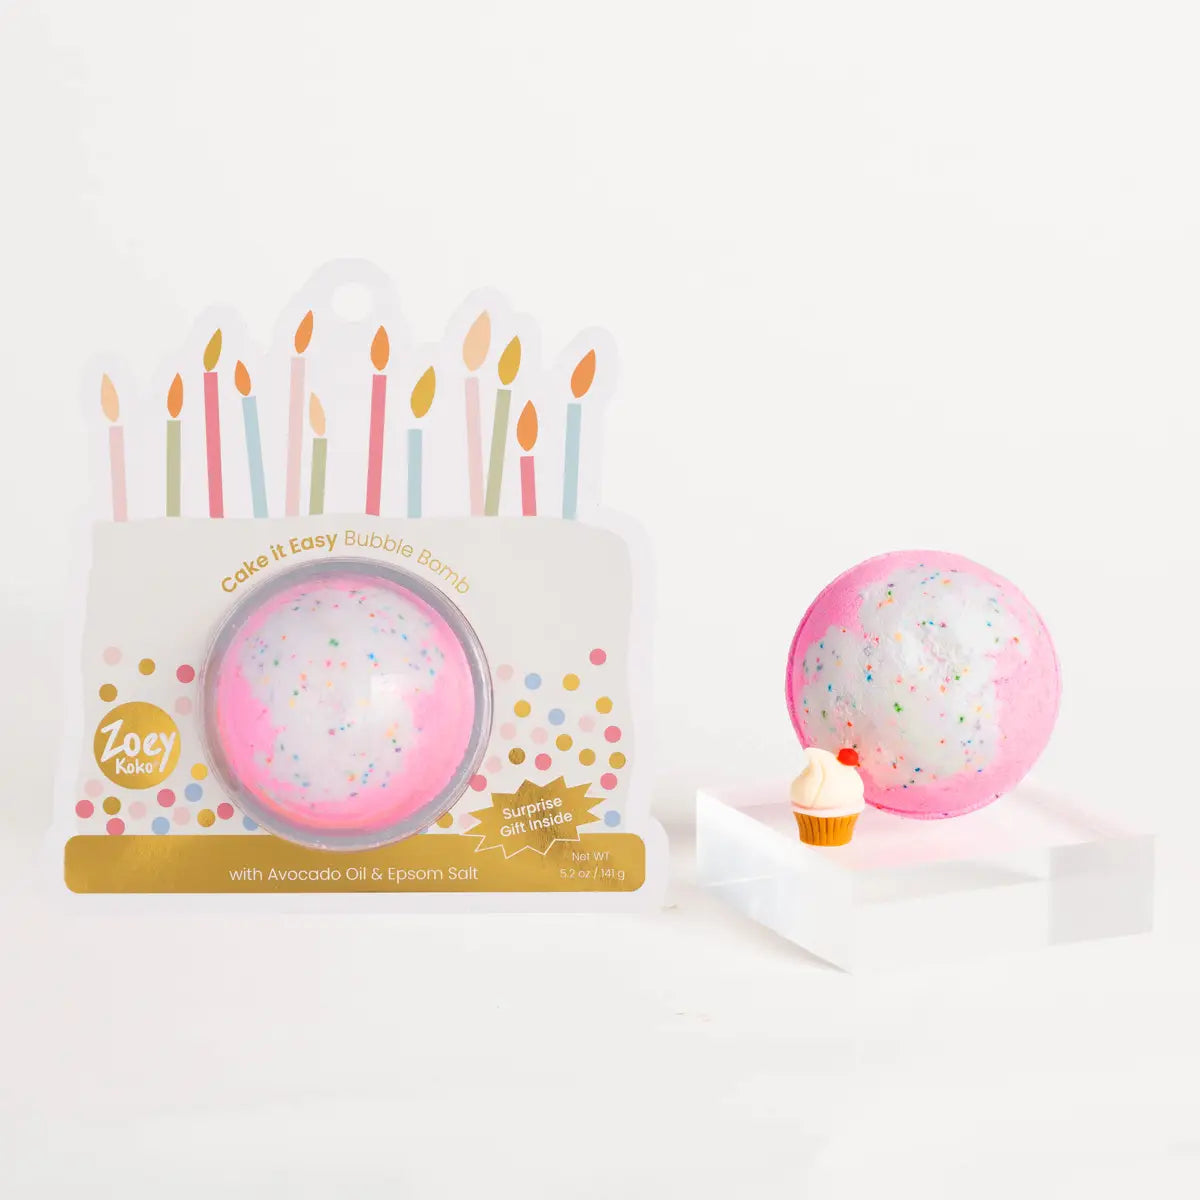 Surprise Bubble Bomb | Cake it Easy